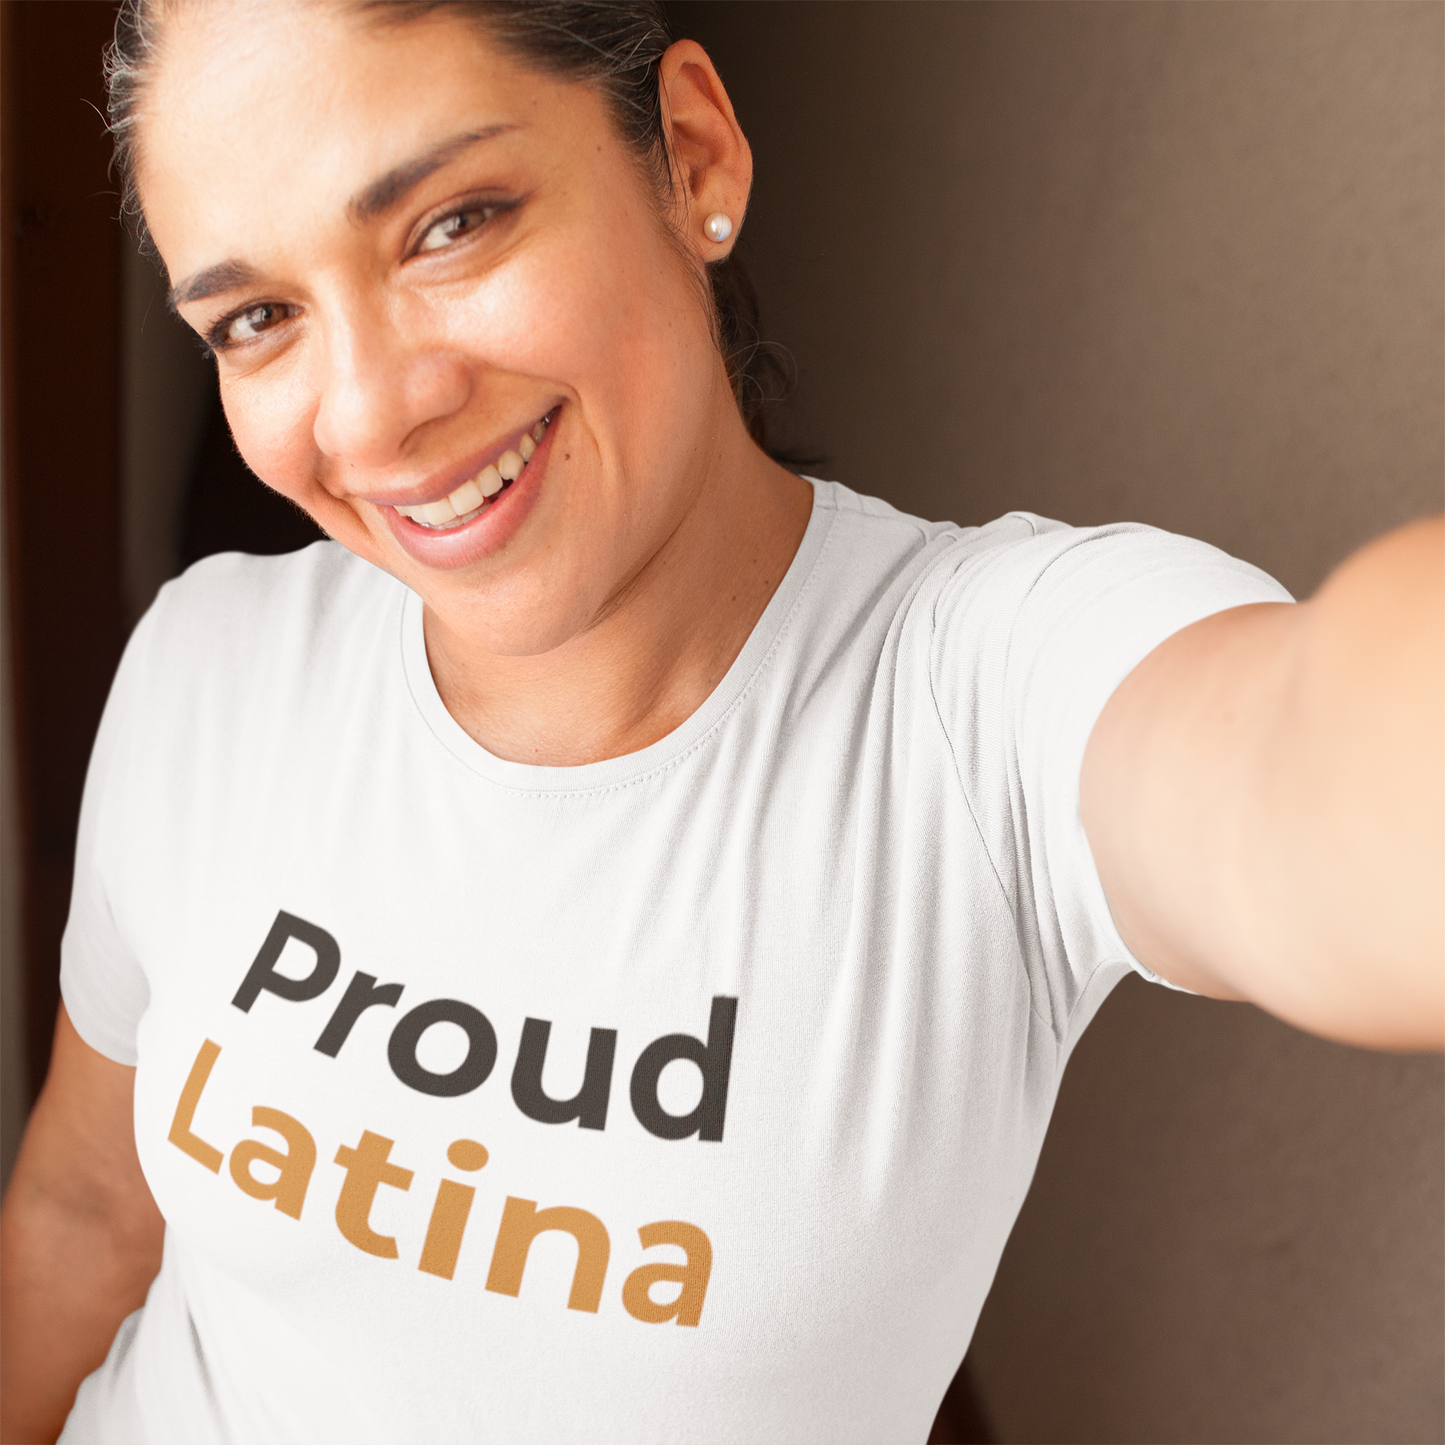 Proud Latina Unisex T-Shirt